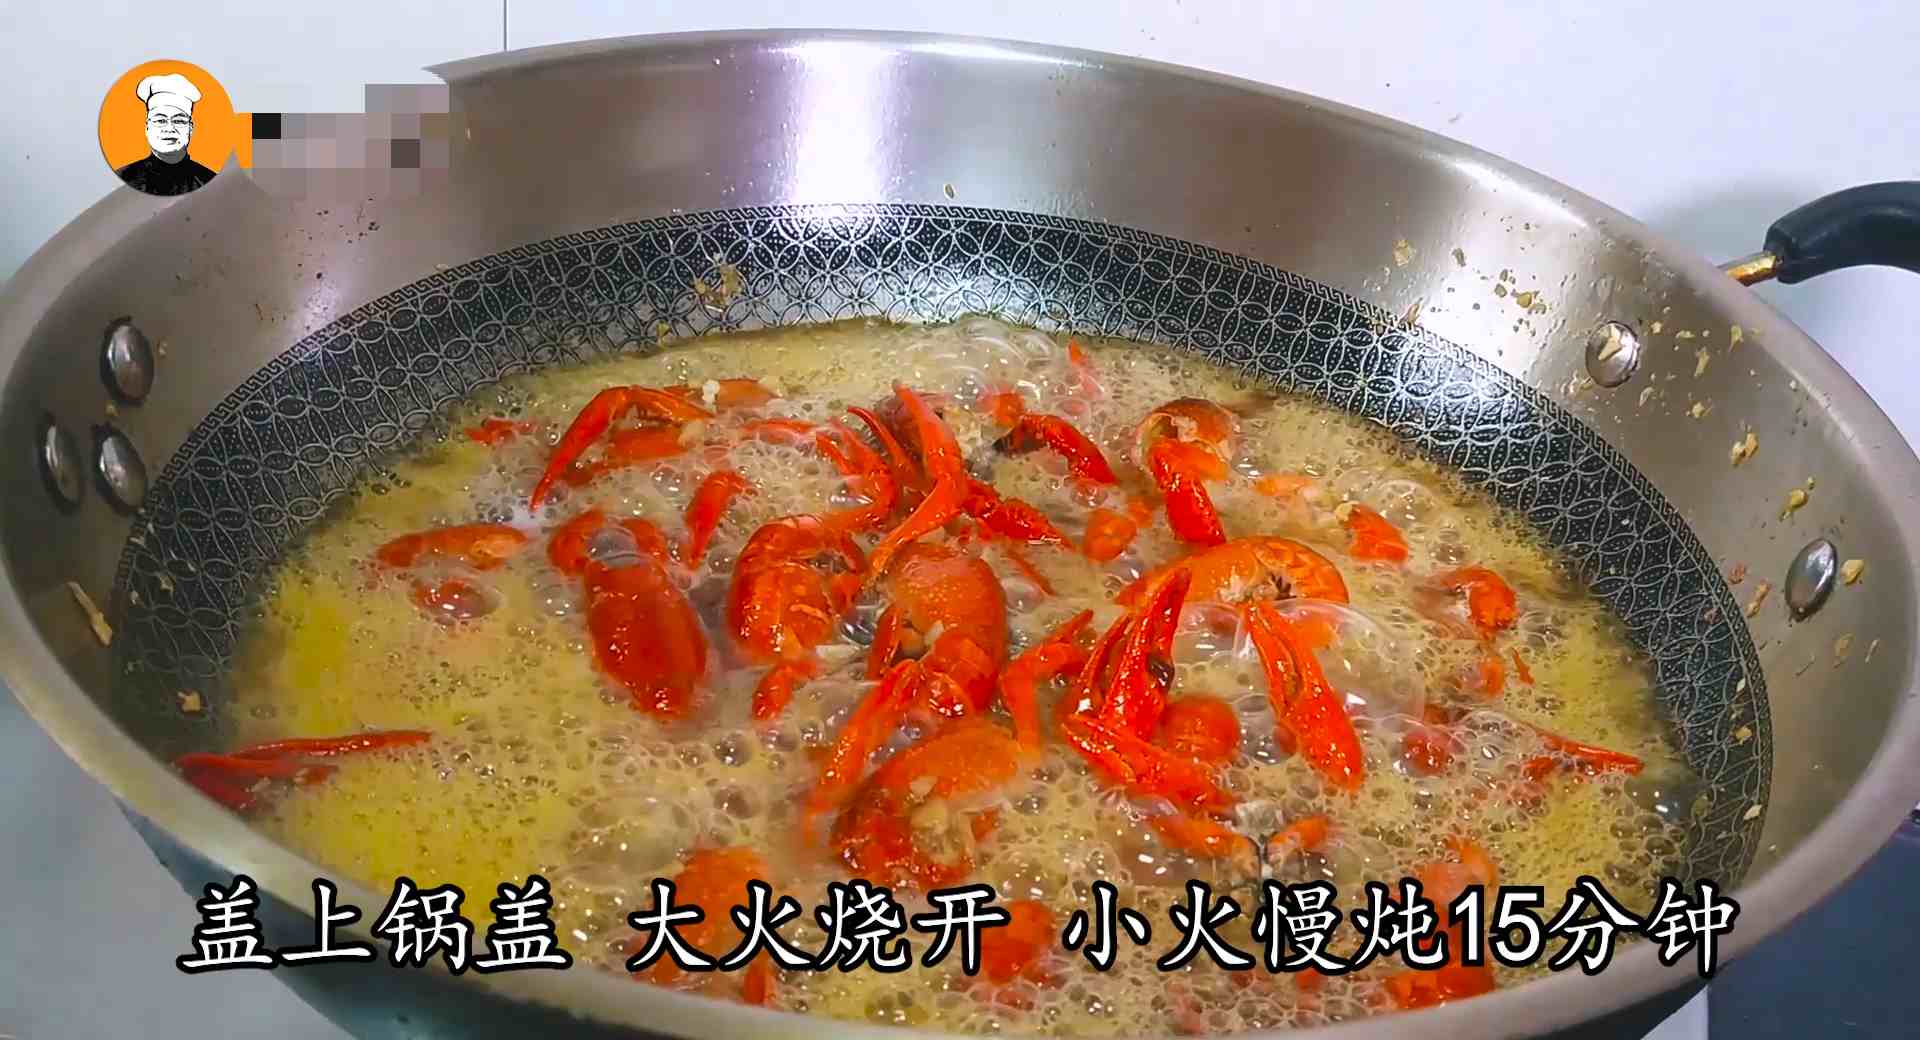 蒜泥龙虾的做法|蒜泥龙虾秘制做法